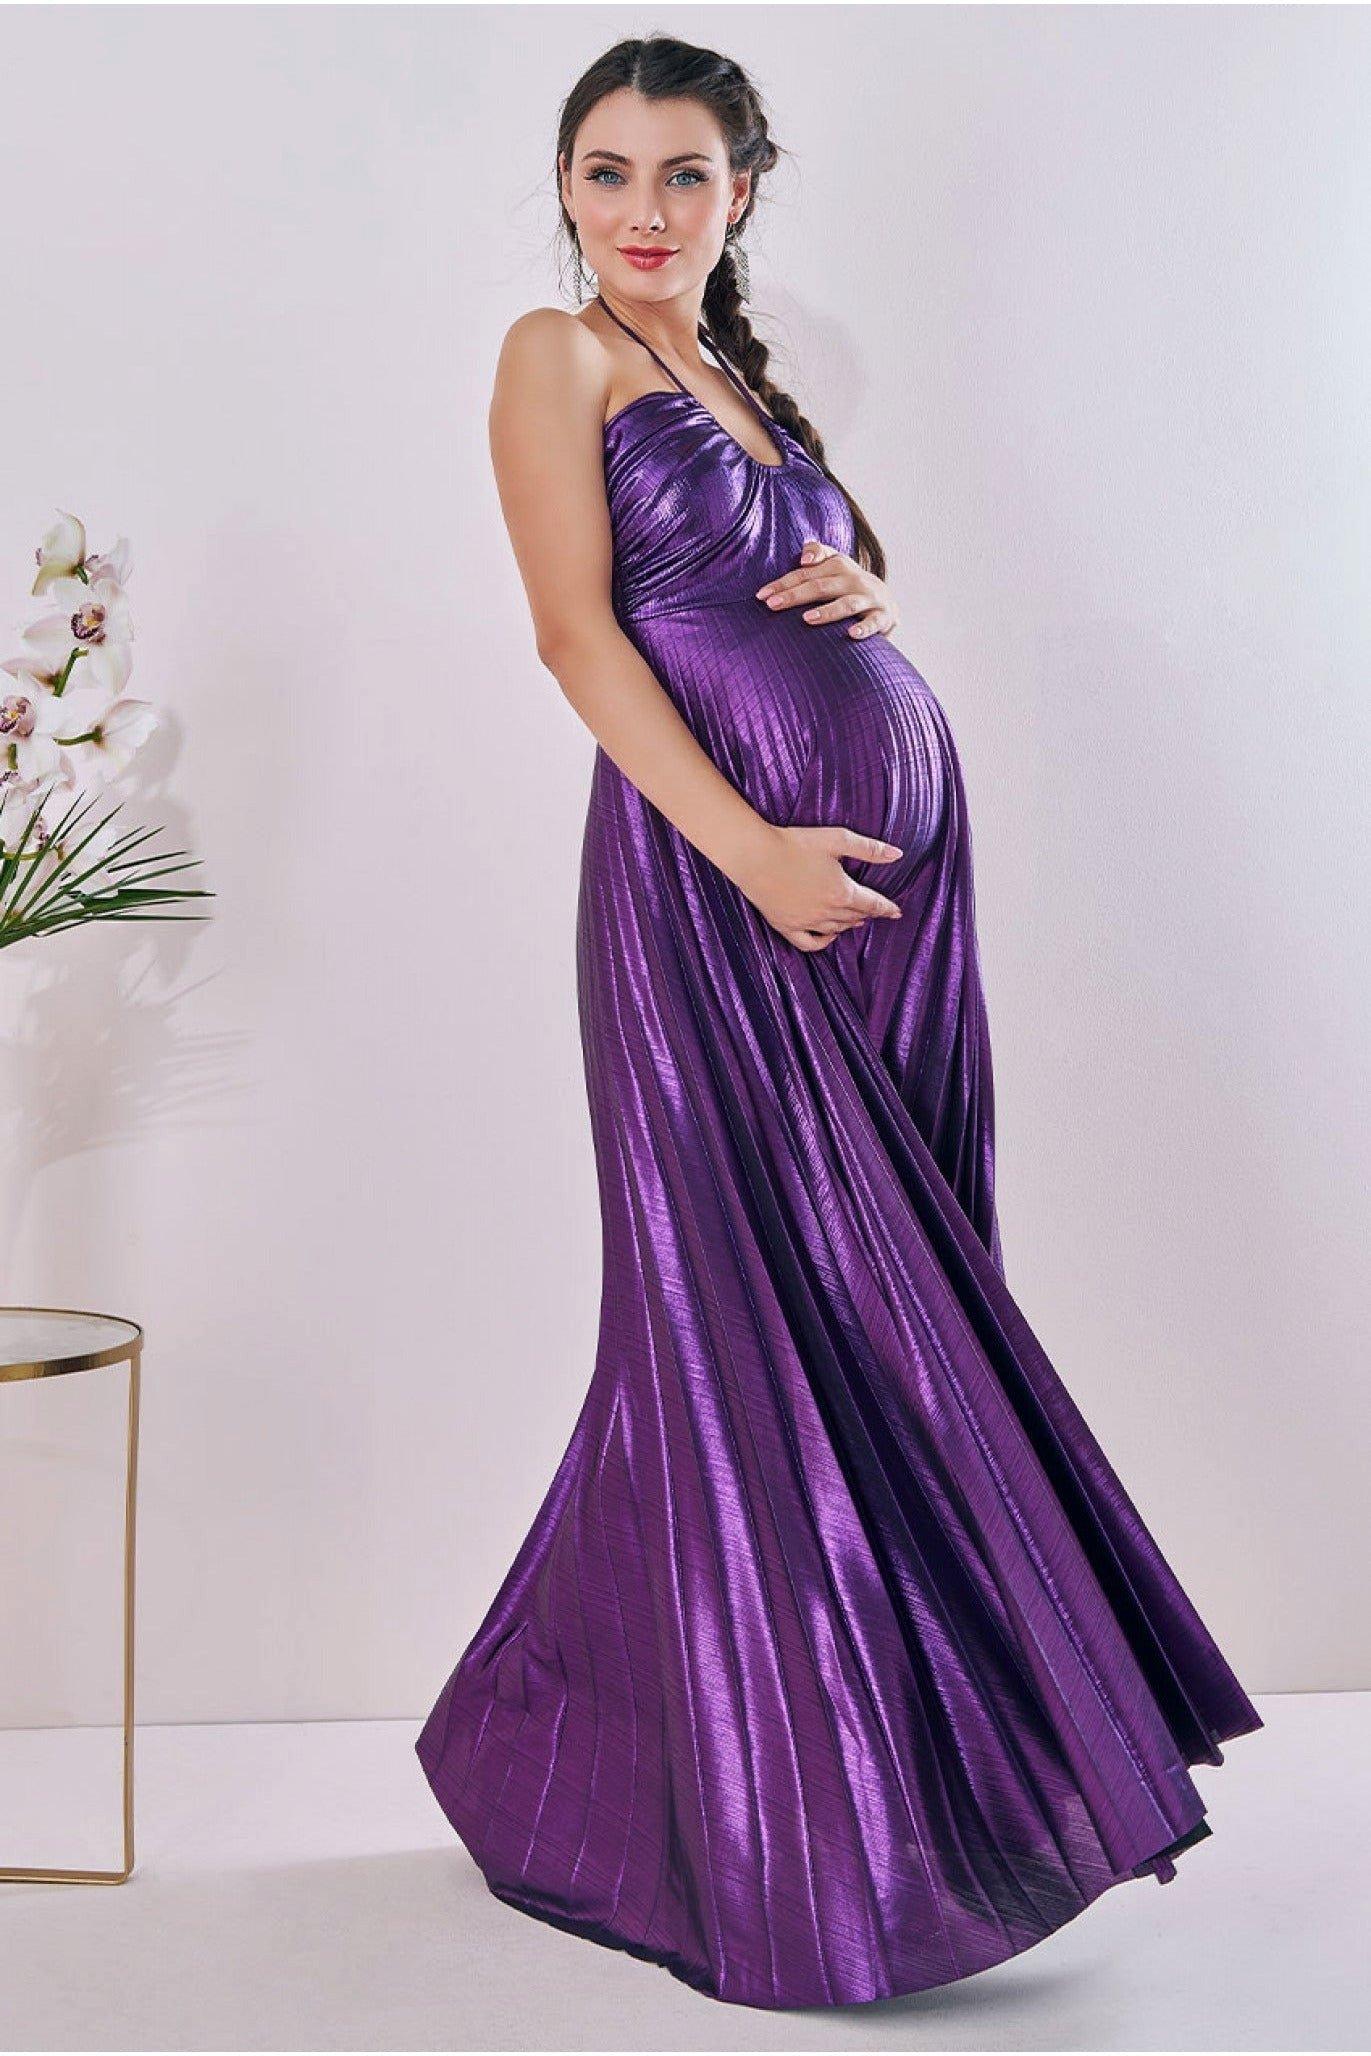 Плиссированное платье из фольги для беременных с завязкой на спине макси Goddiva, фиолетовый платье макси для беременных длинное кружевное белое платье русалка накидка для беременных женщин реквизит для фотосессии